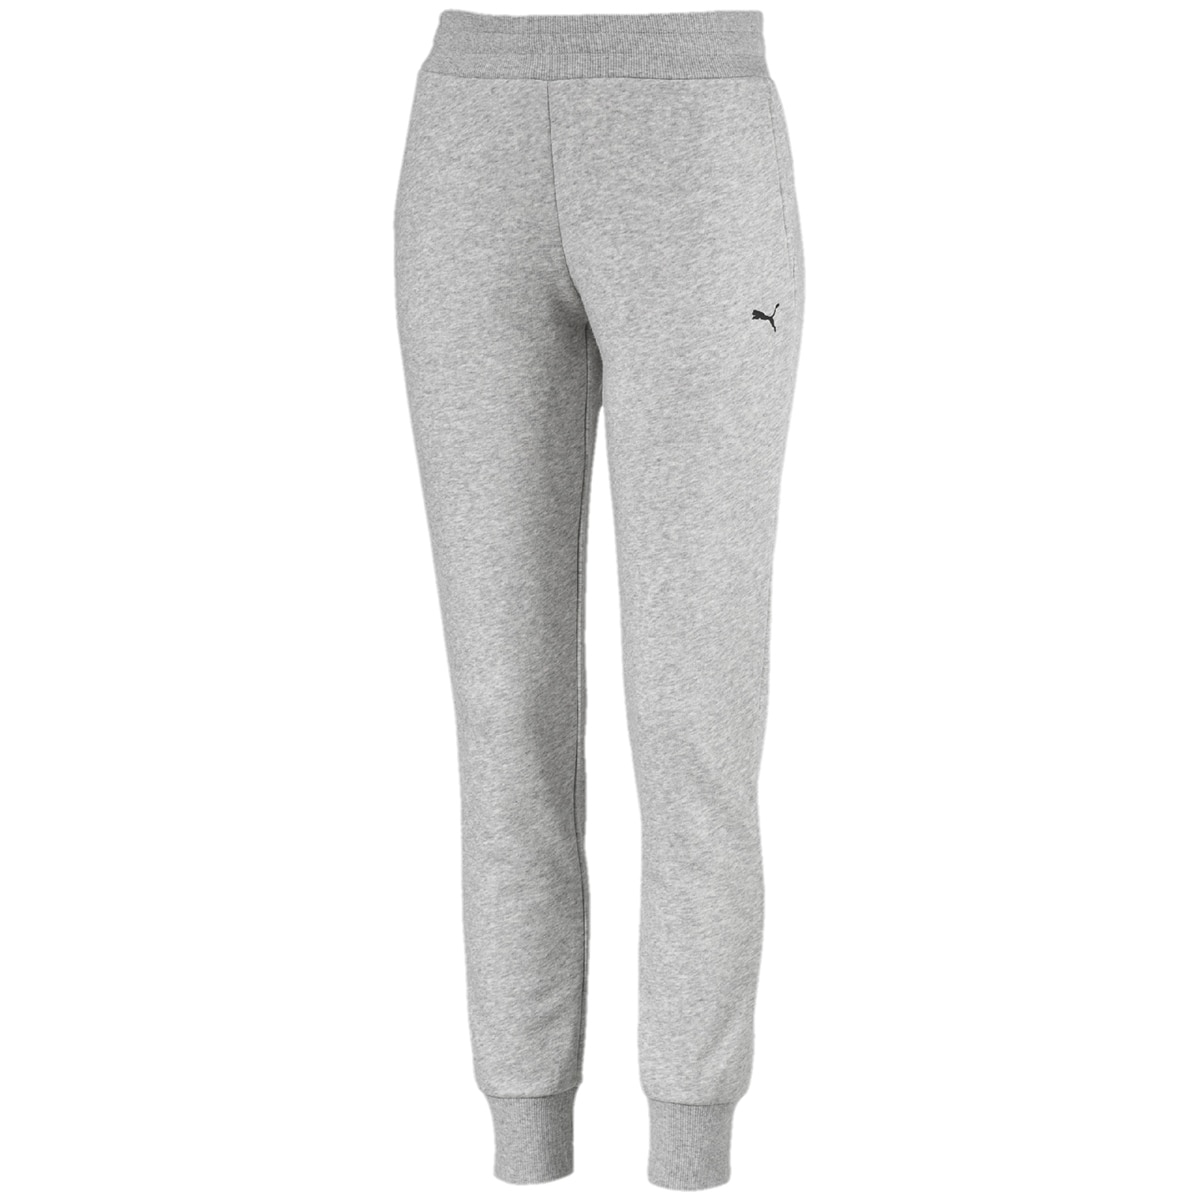 puma track pants grey